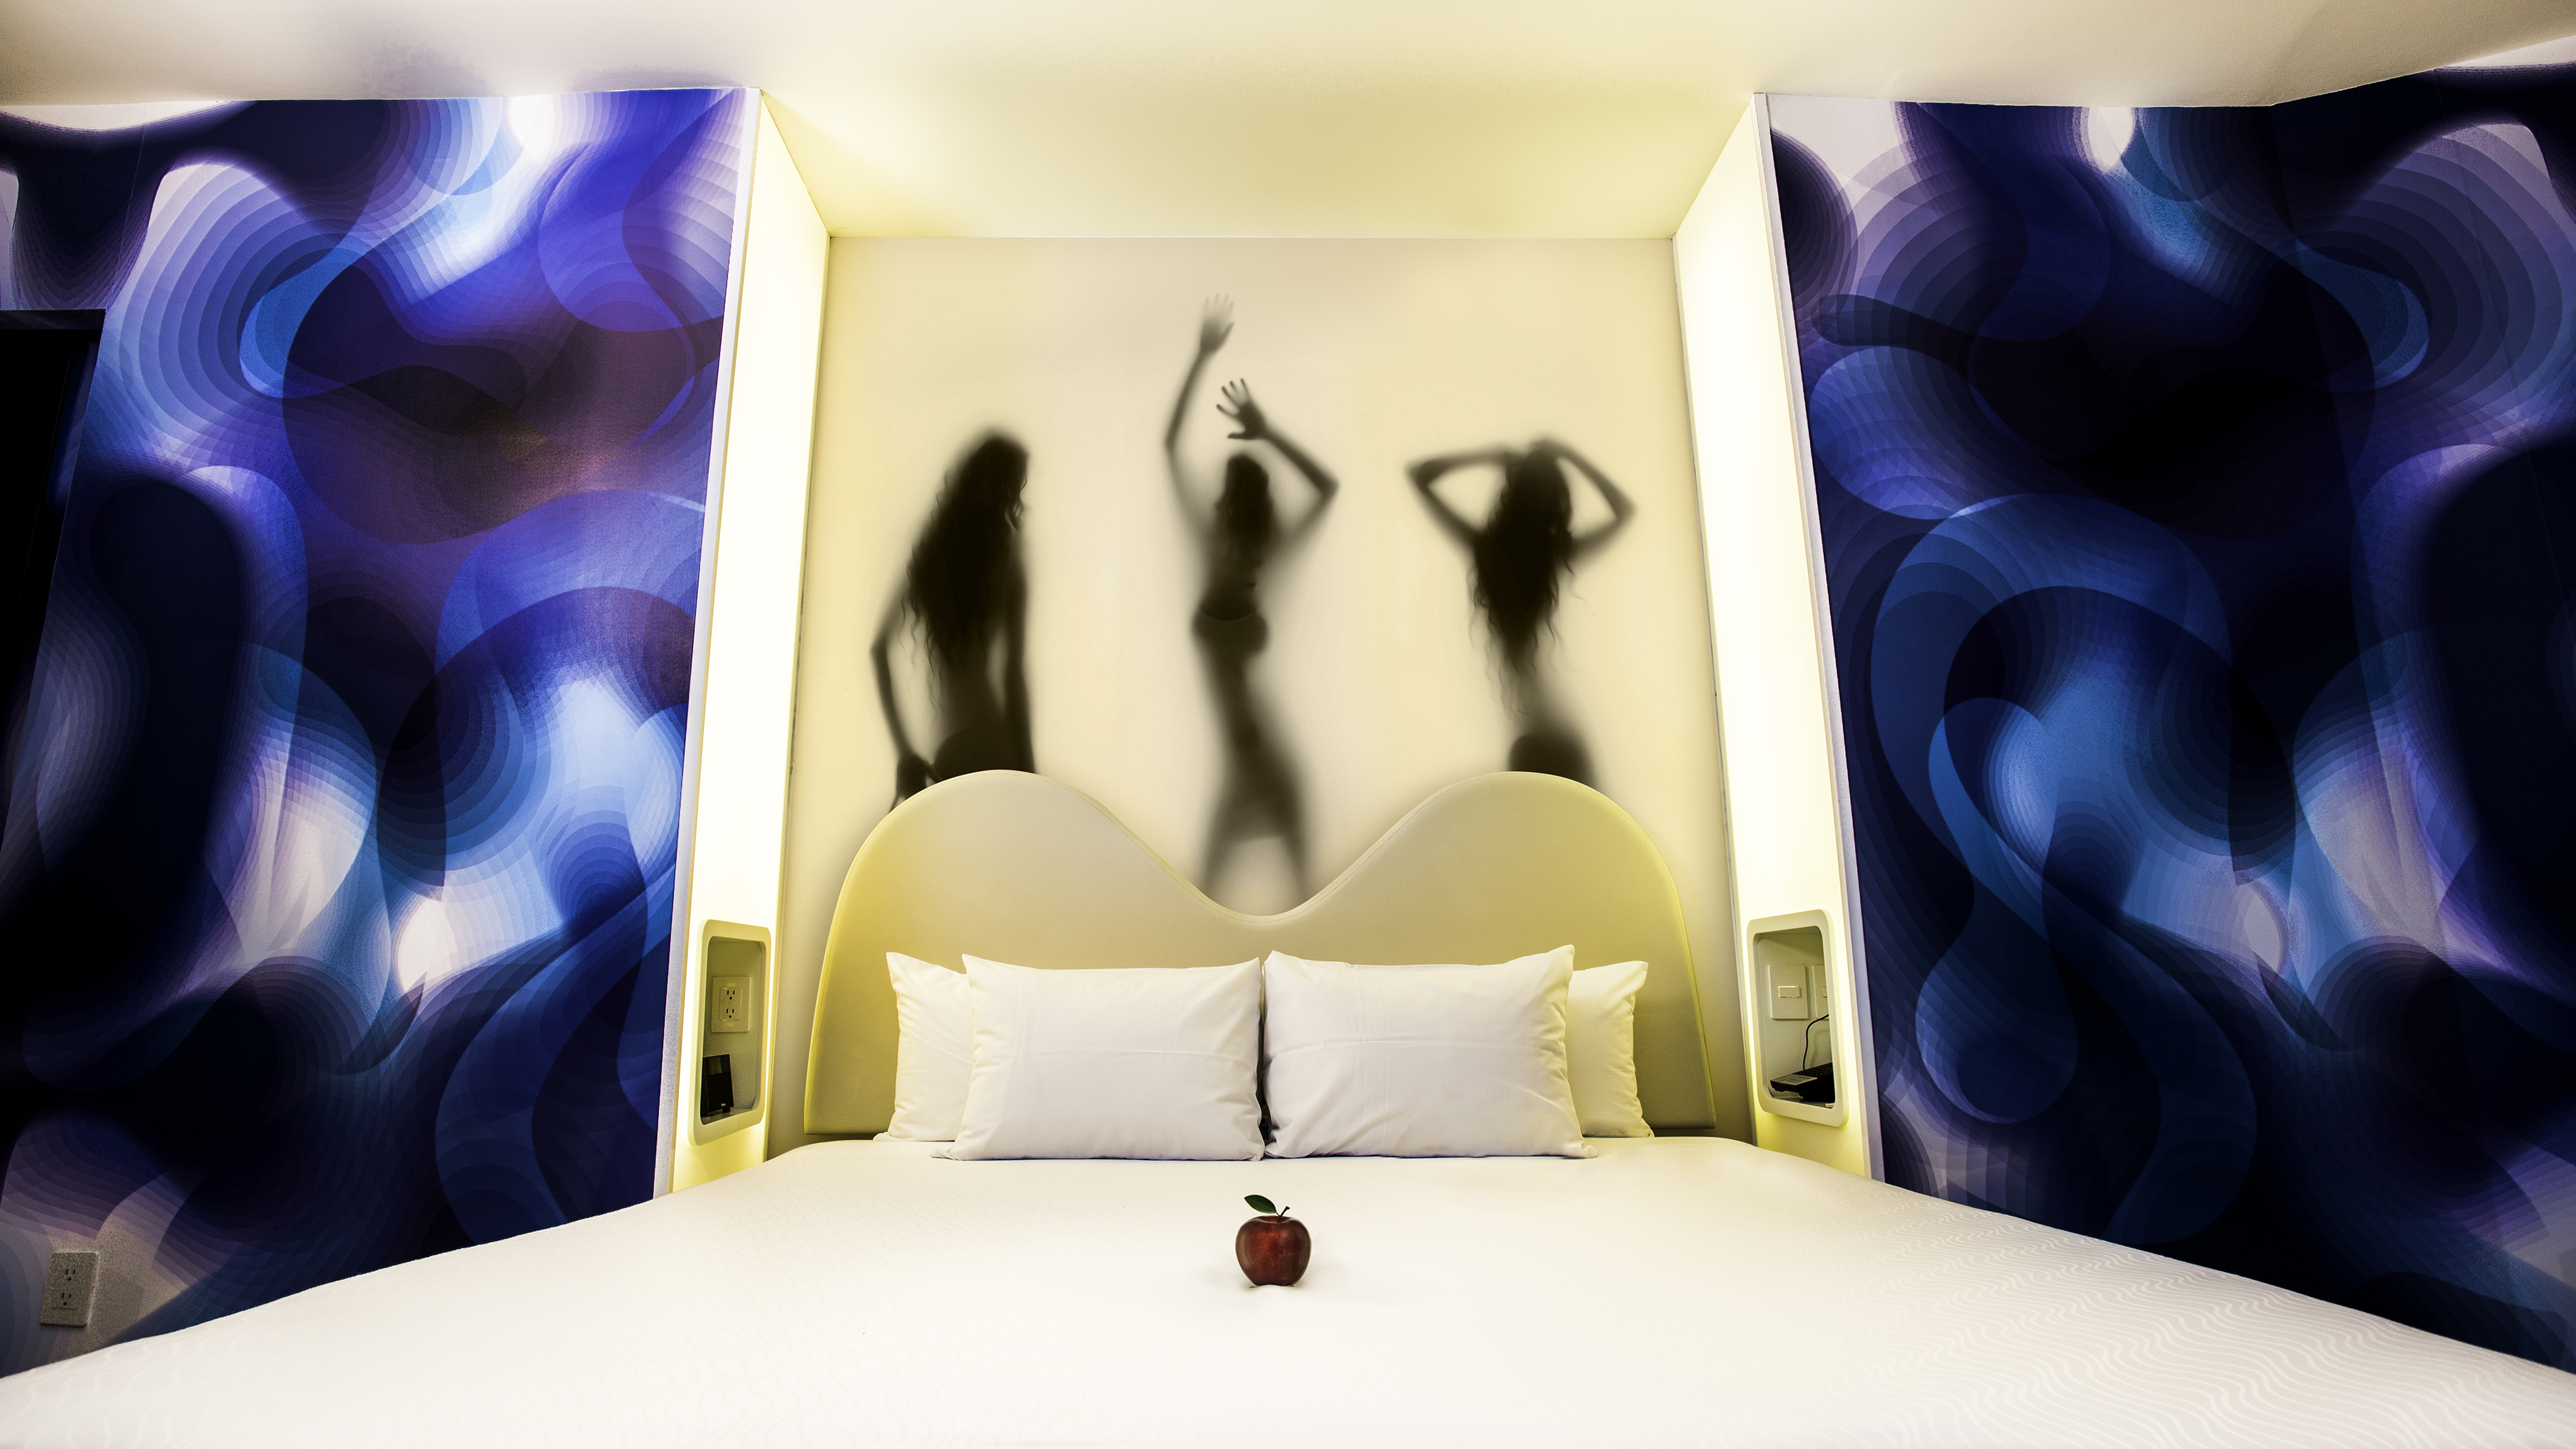 Hotel en Cancún cumple tu fantasía erótica